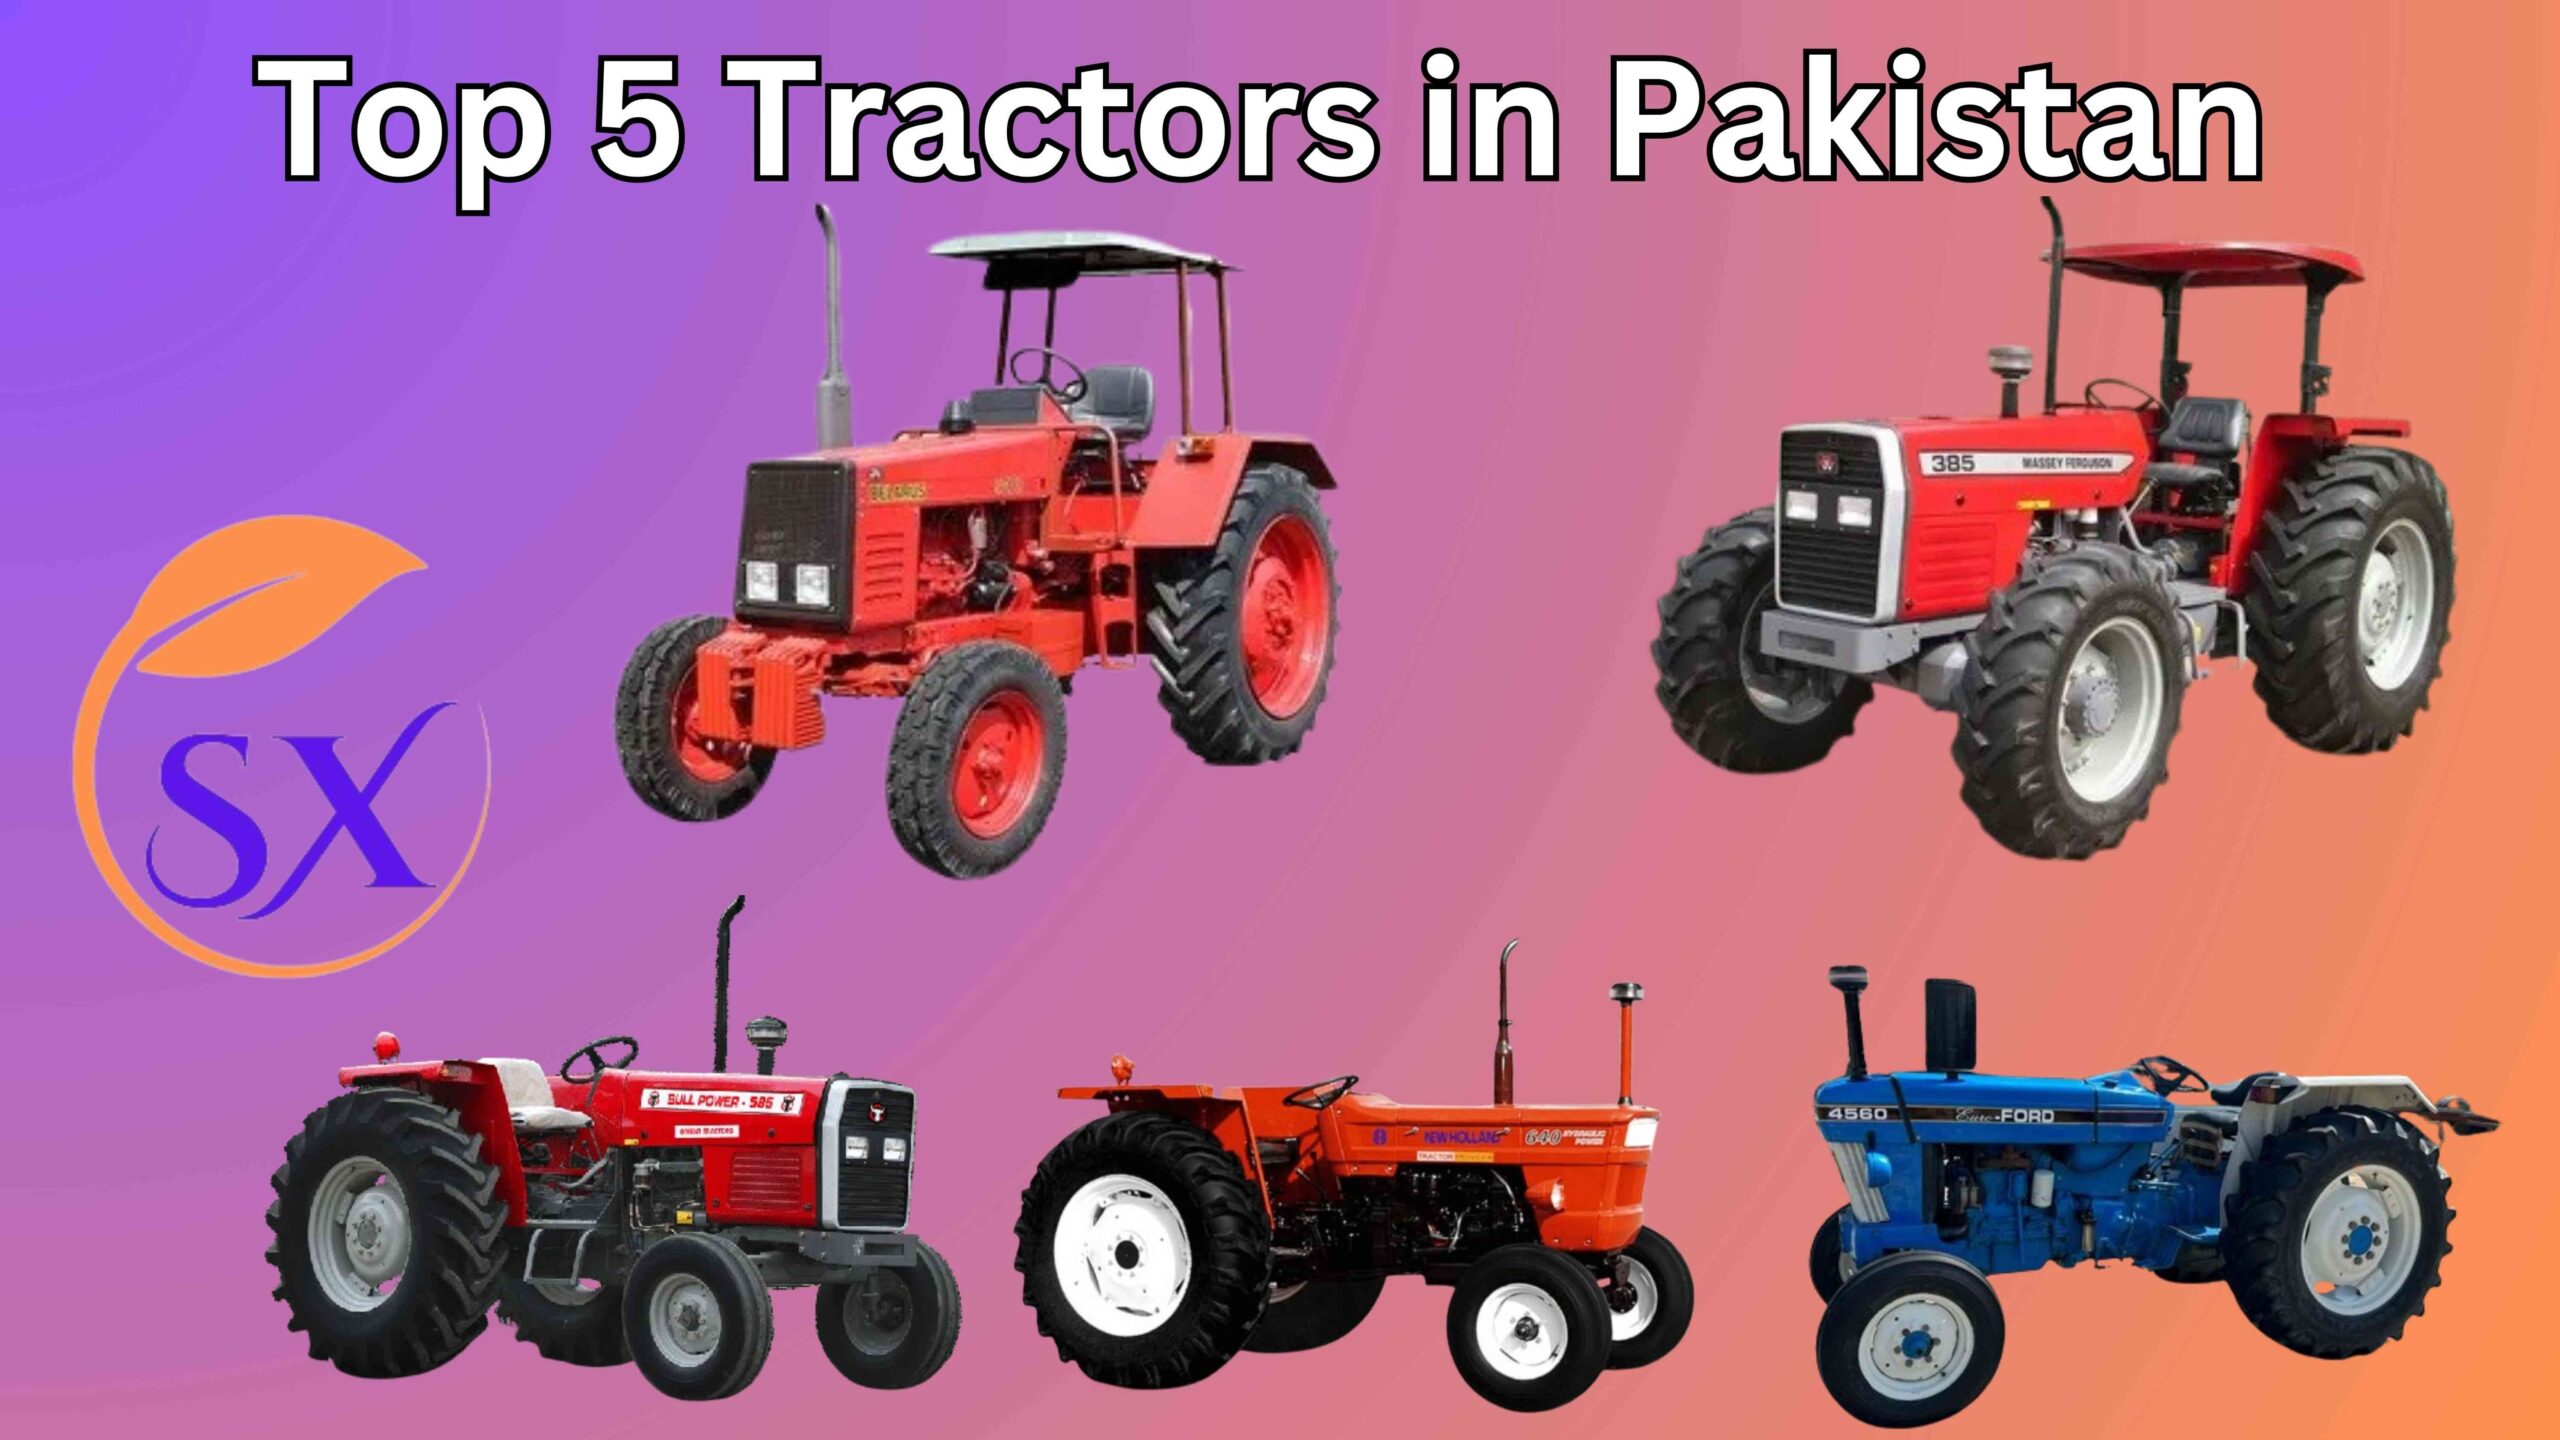 Top 5 Tractors in Pakistan | Belarus, Millat, Fiat, IMT